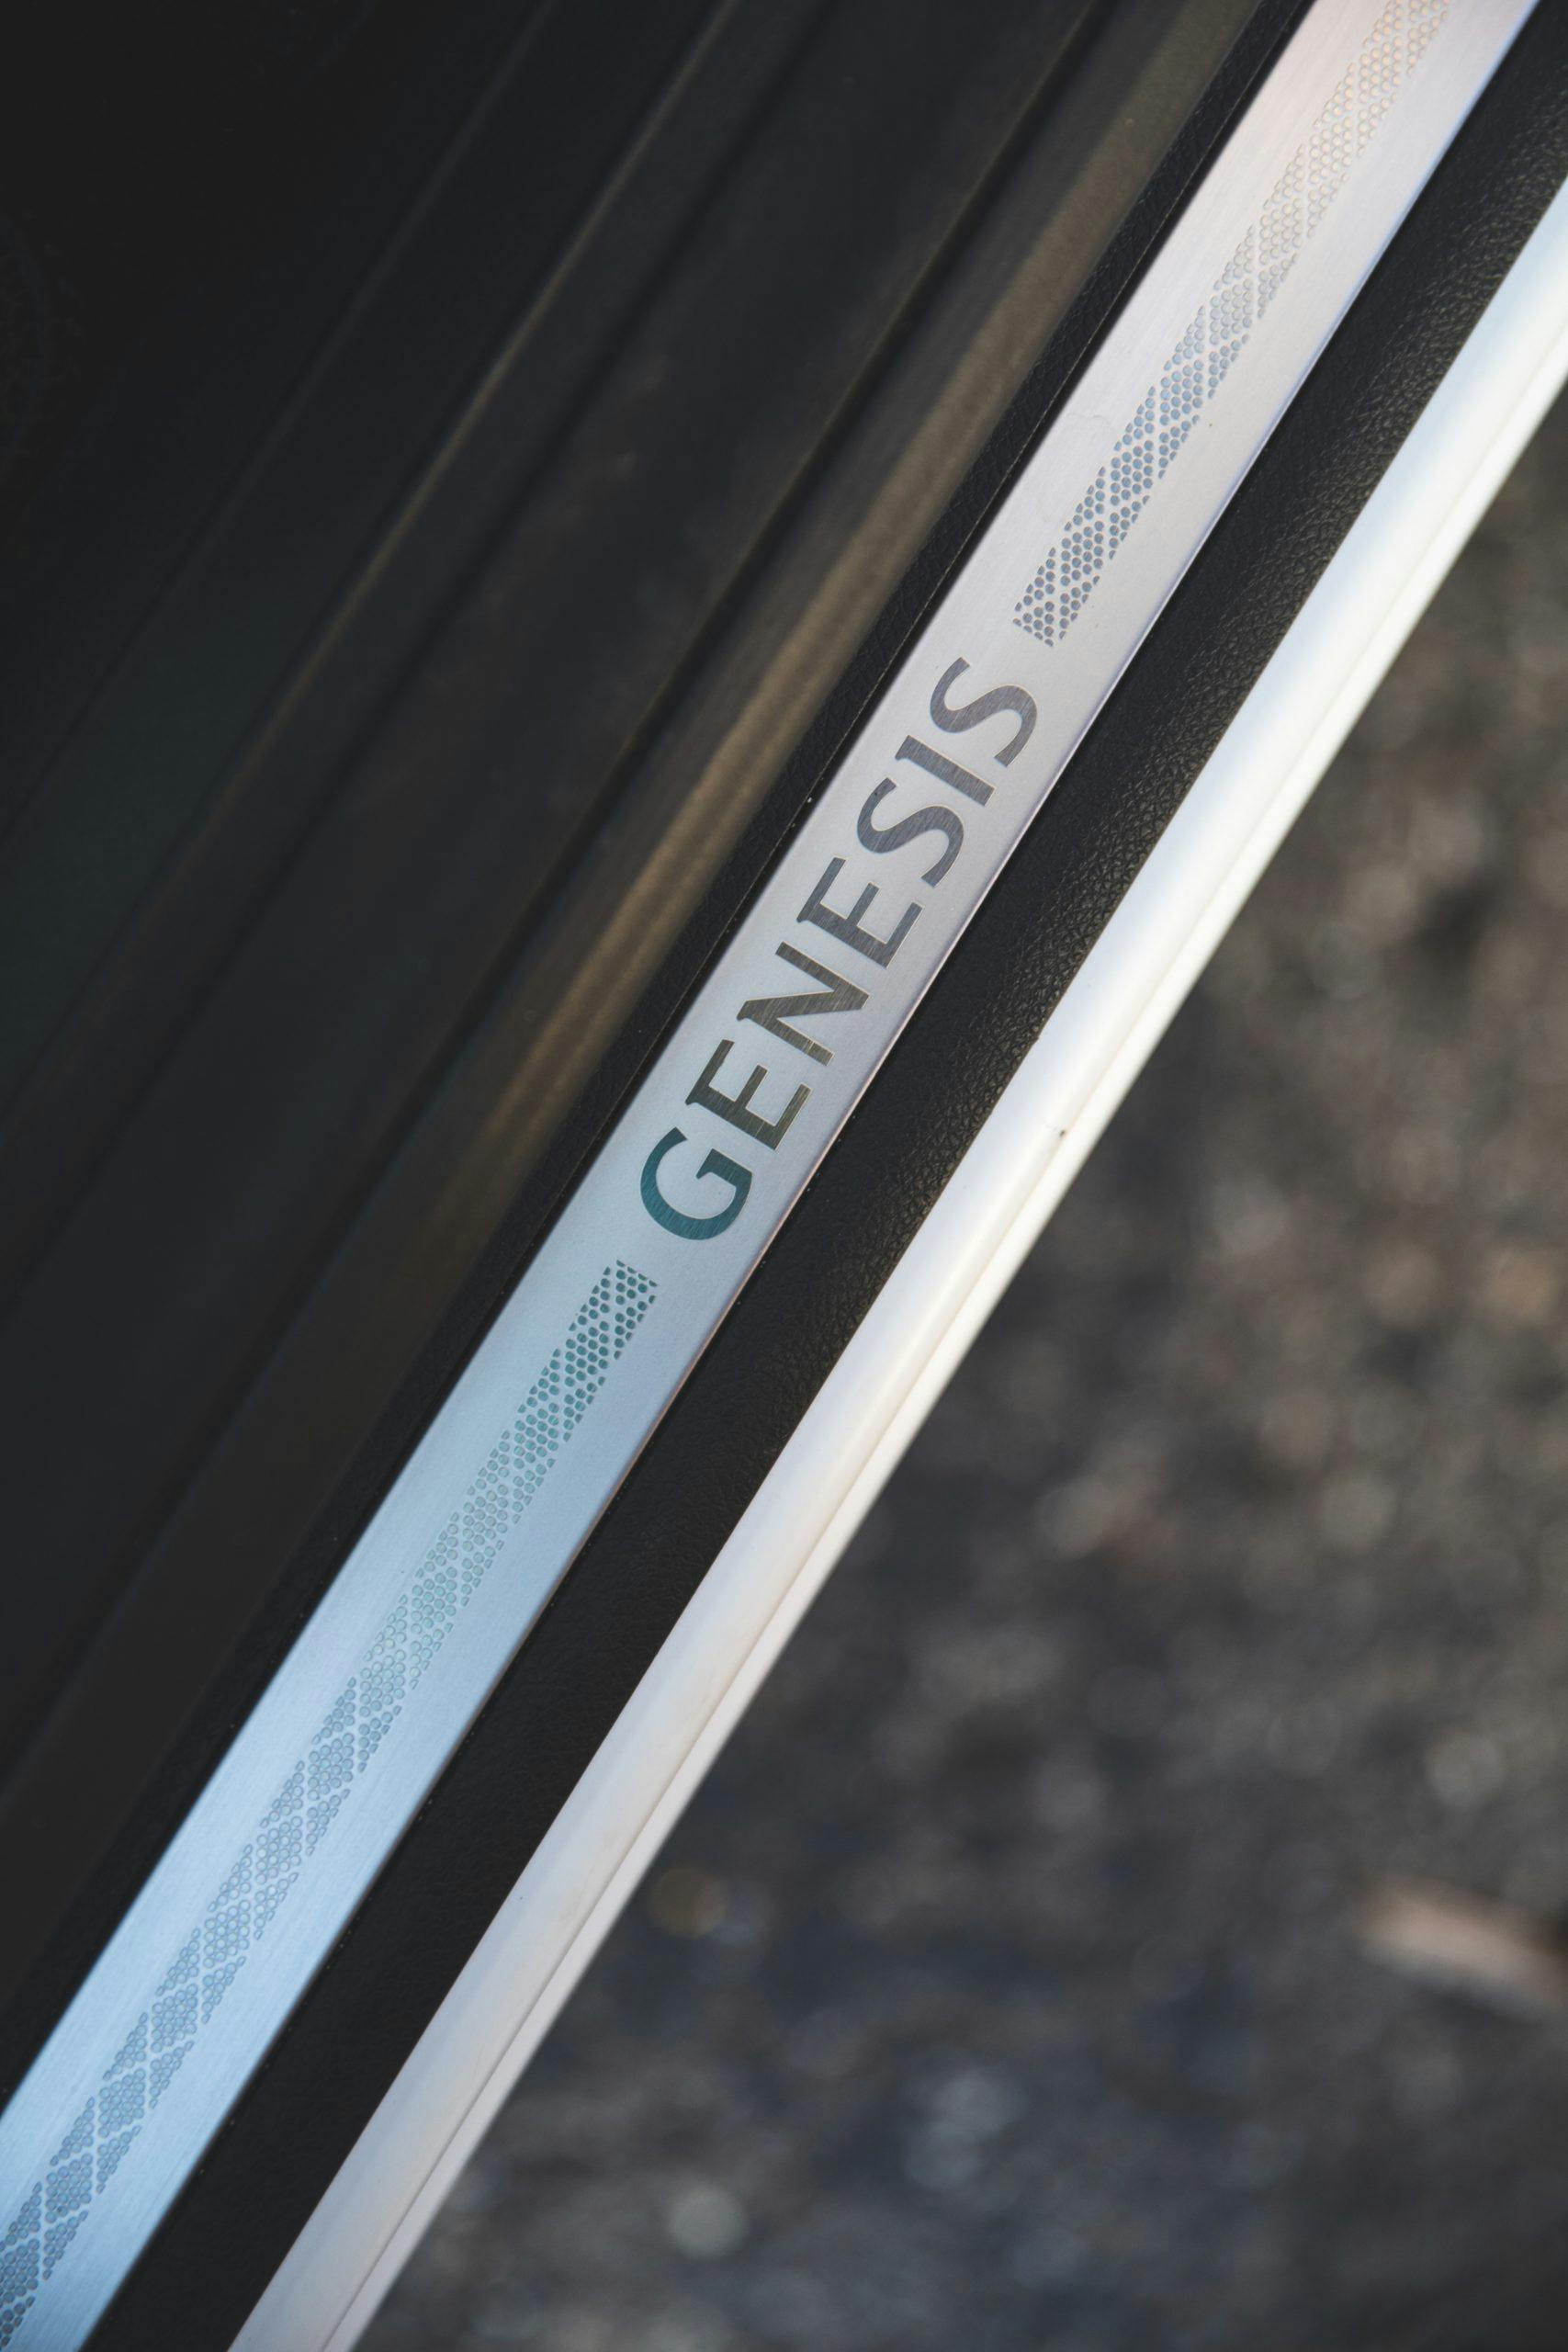 Genesis GV70 interior door panel sills vertical